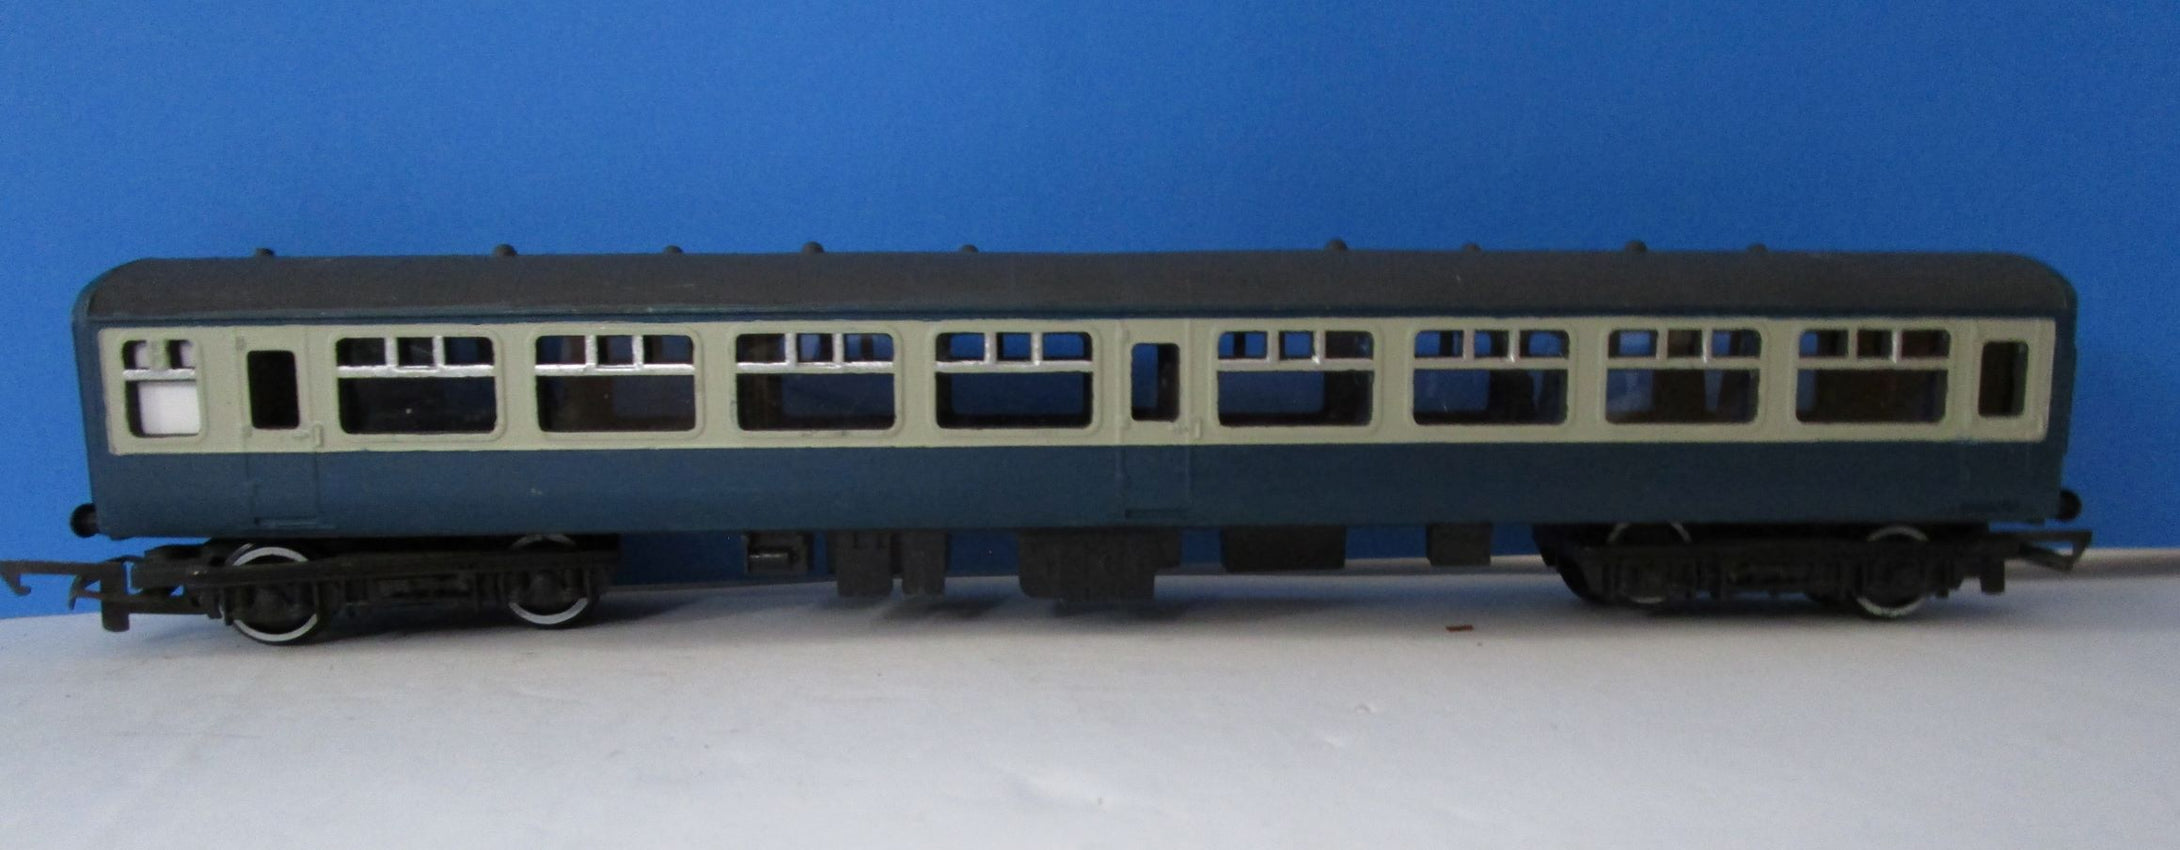 BMTC004 Hornby Mk2 TSO blue grey - Unboxed